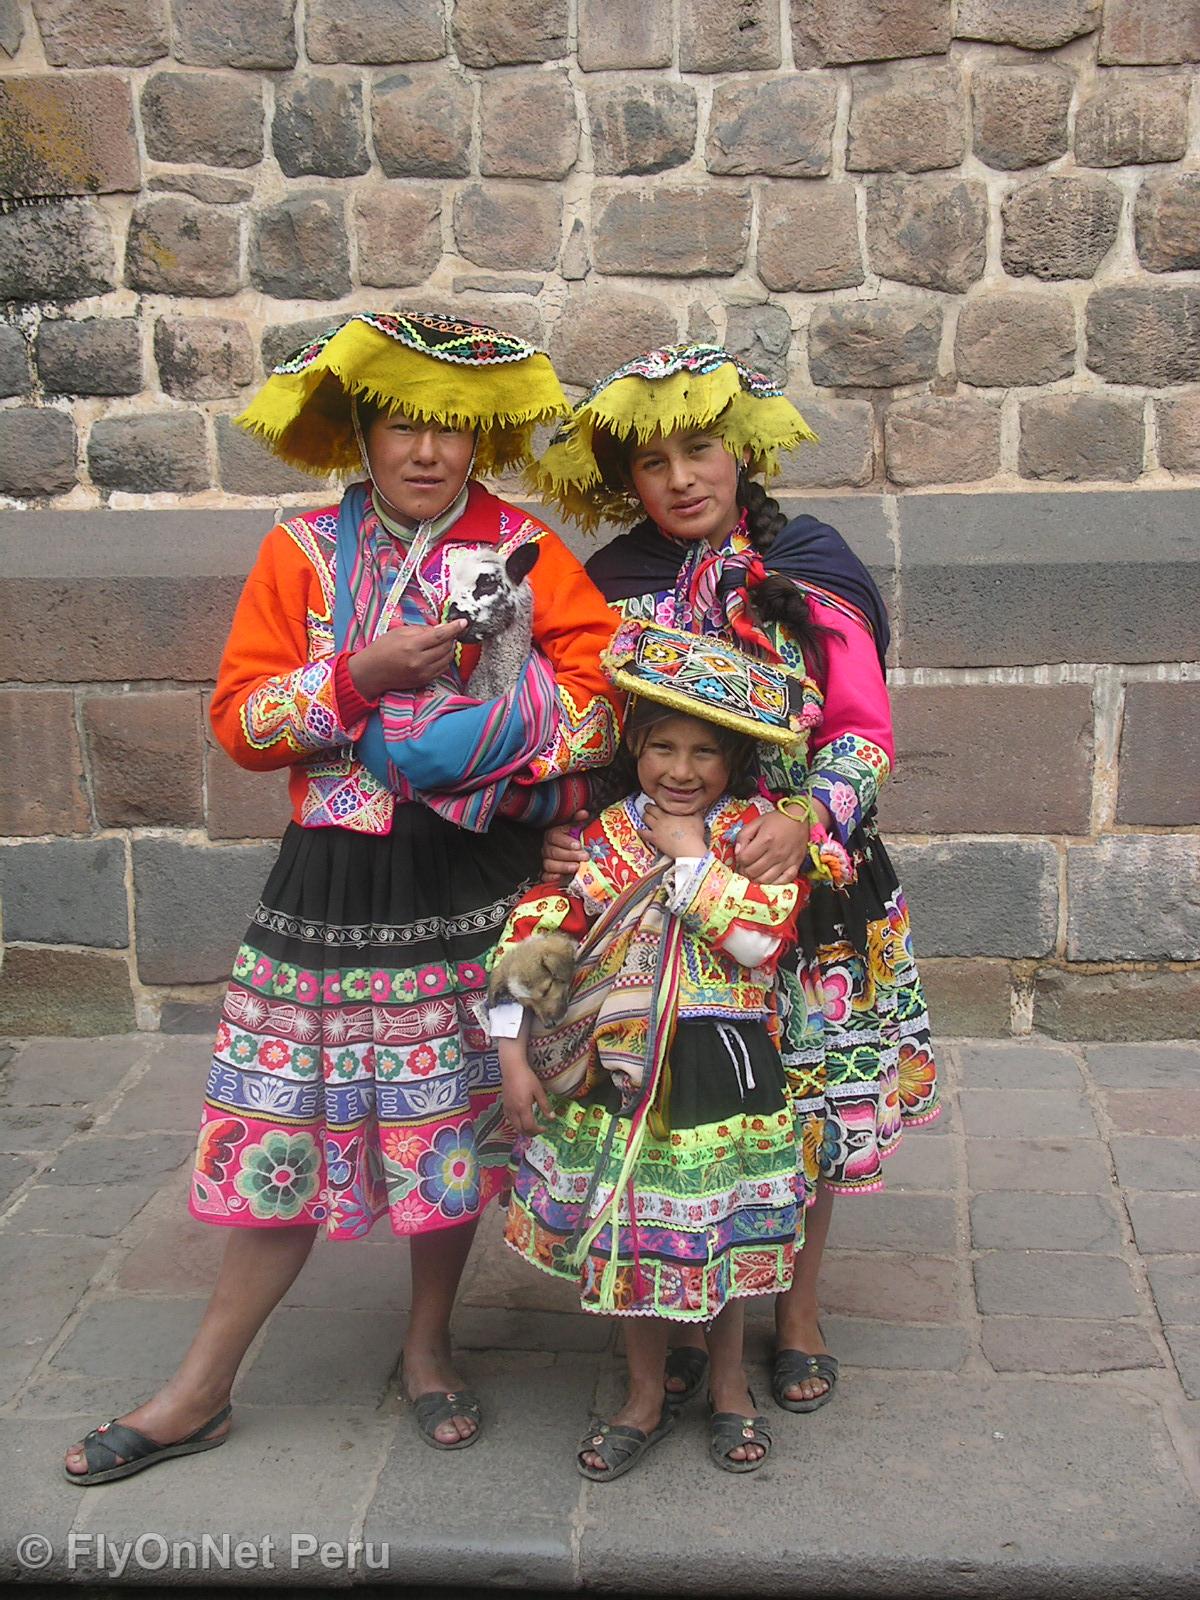 Álbum de fotos: Women from Cusco, Cuzco